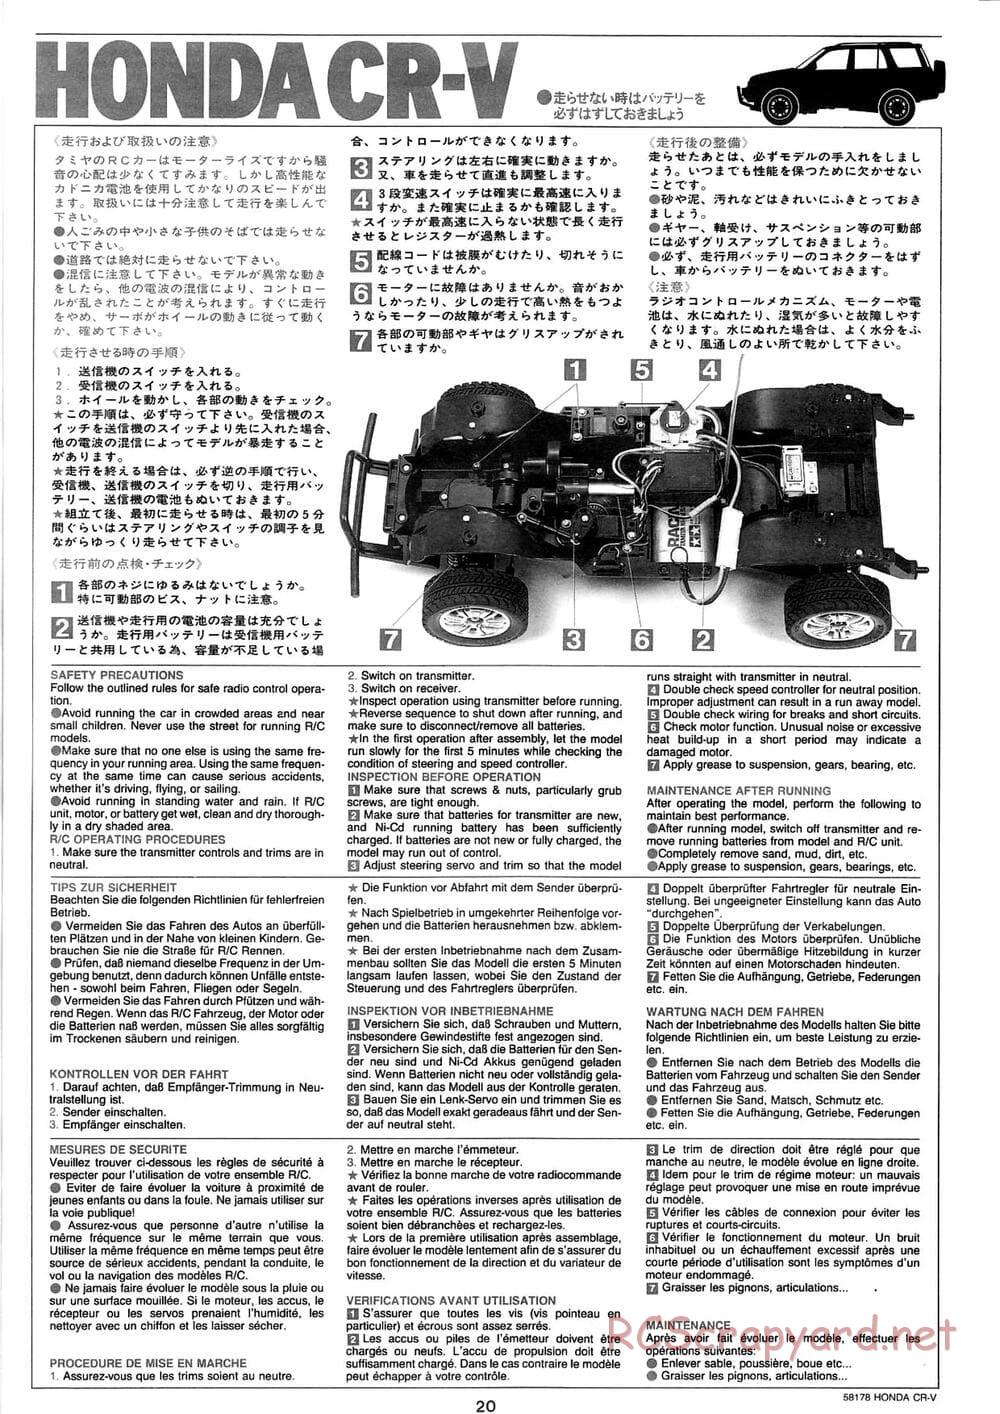 Tamiya - Honda CR-V - CC-01 Chassis - Manual - Page 20